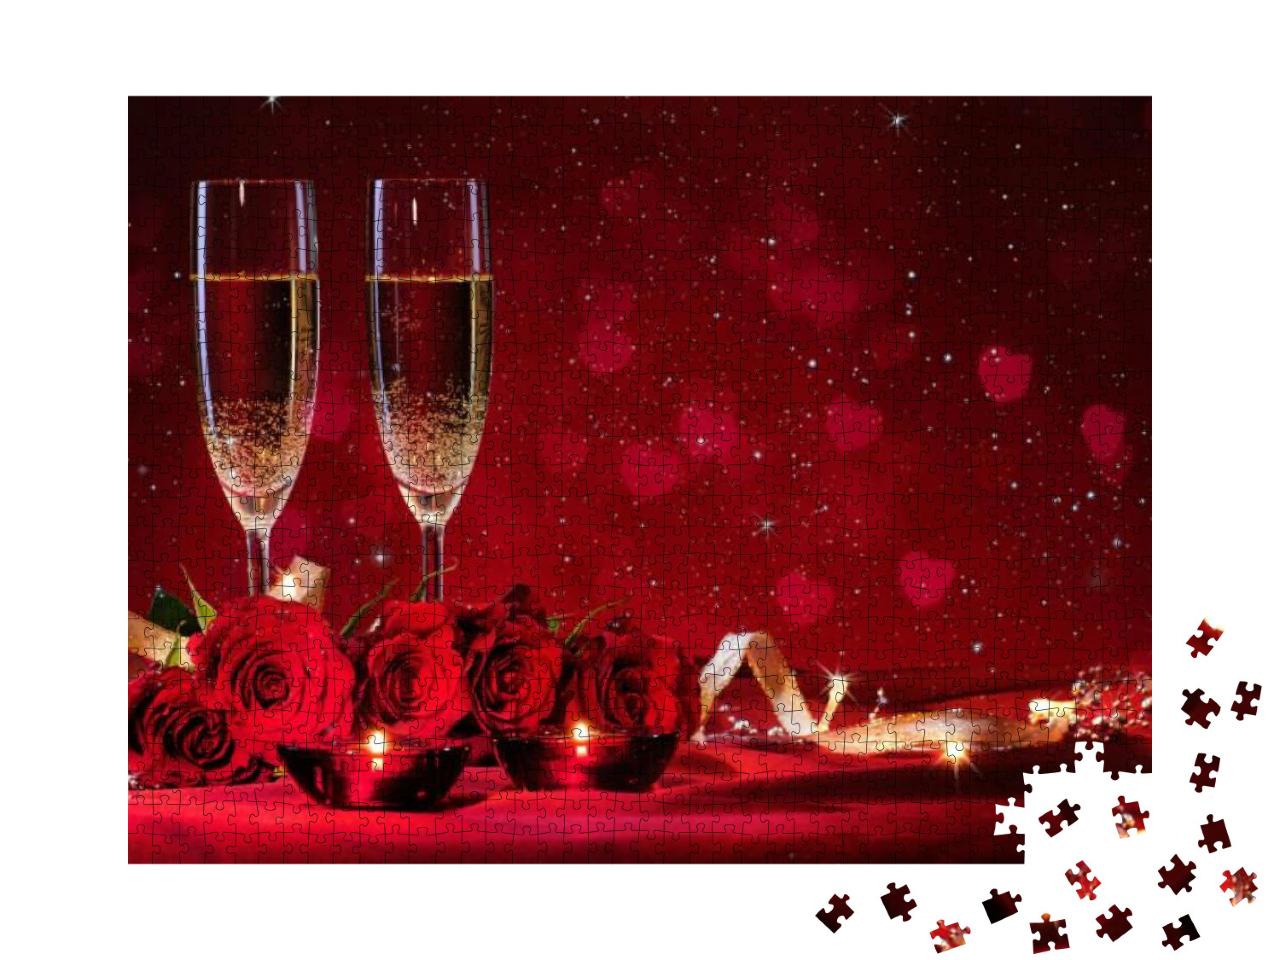 Puzzle 1000 Teile „Valentinstag: Champagnergläser und rote Rosen“